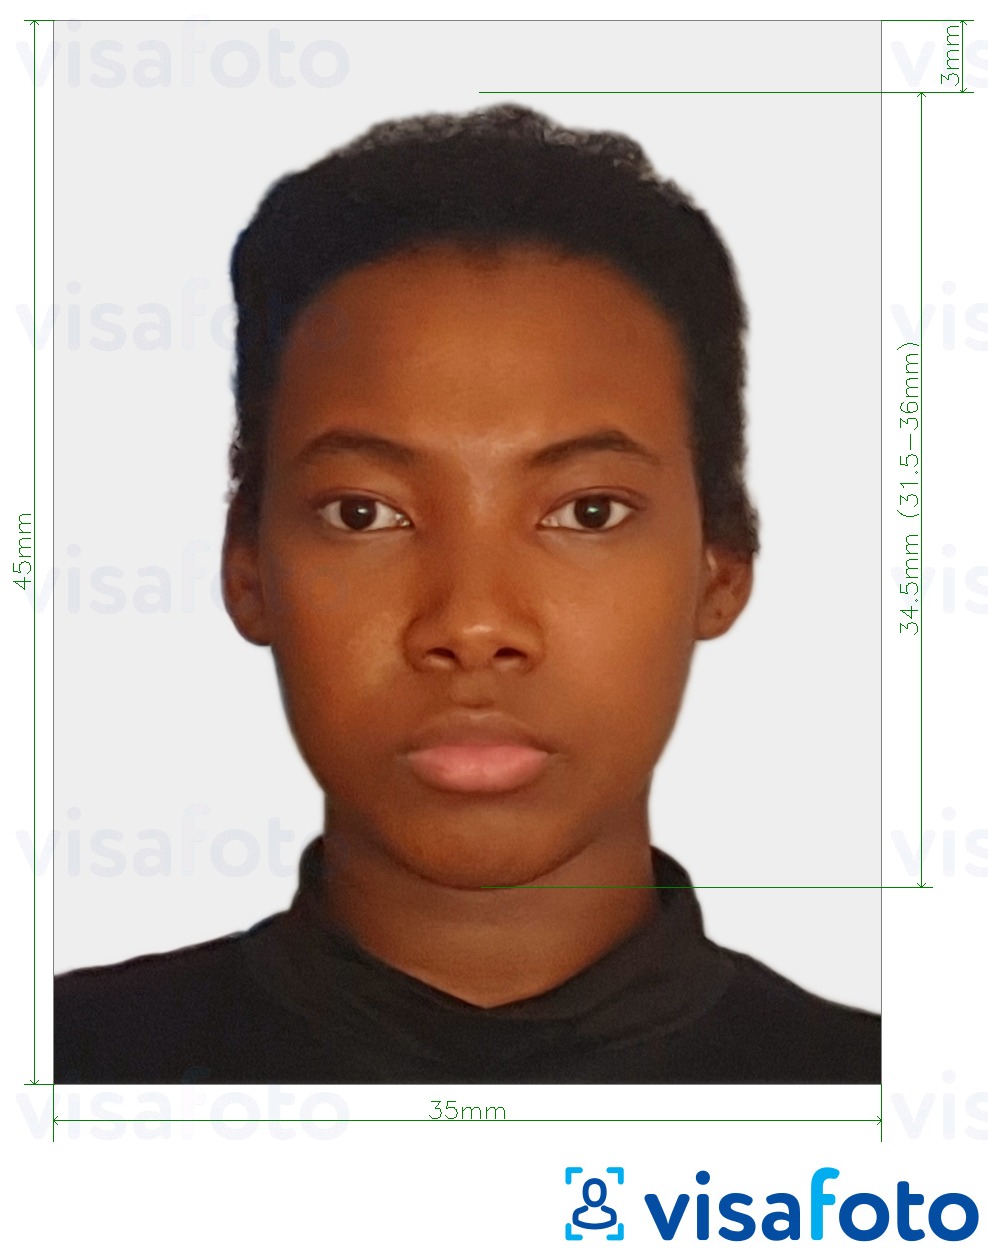 Primjer fotografije za Sierra Leone viza 35x45 mm (3,5x4,5 cm) s točno određenom veličinom